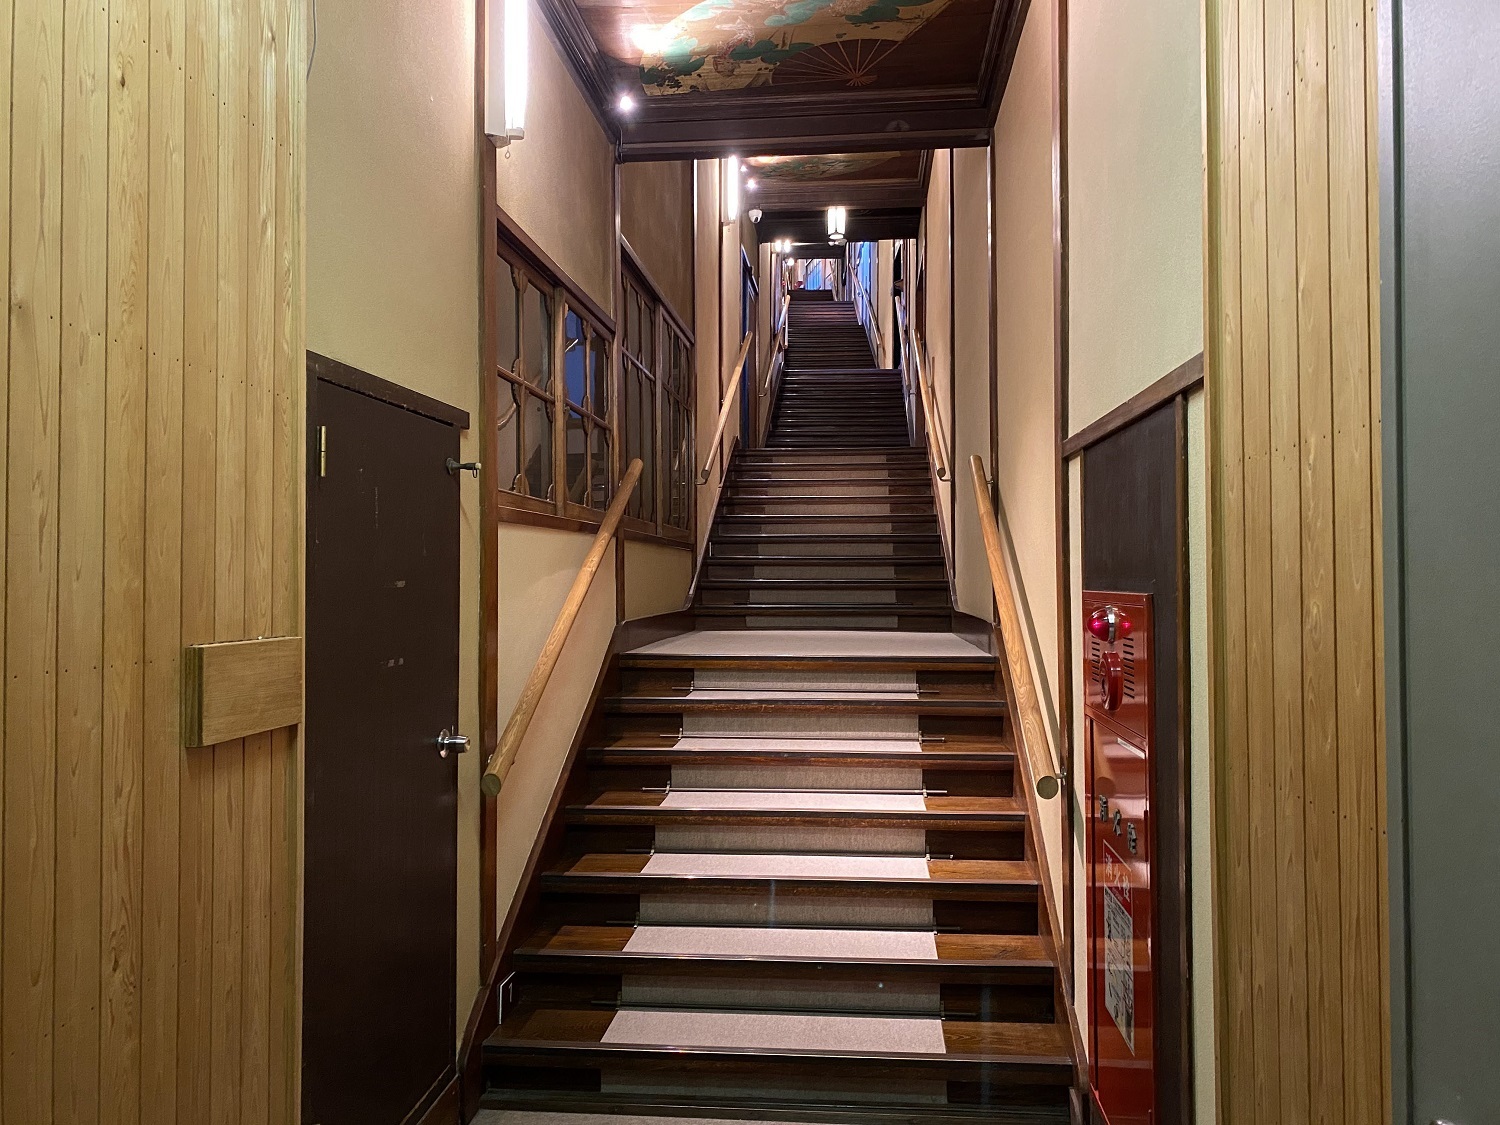 7つの部屋を階段で繋ぐ文化財「百段階段」